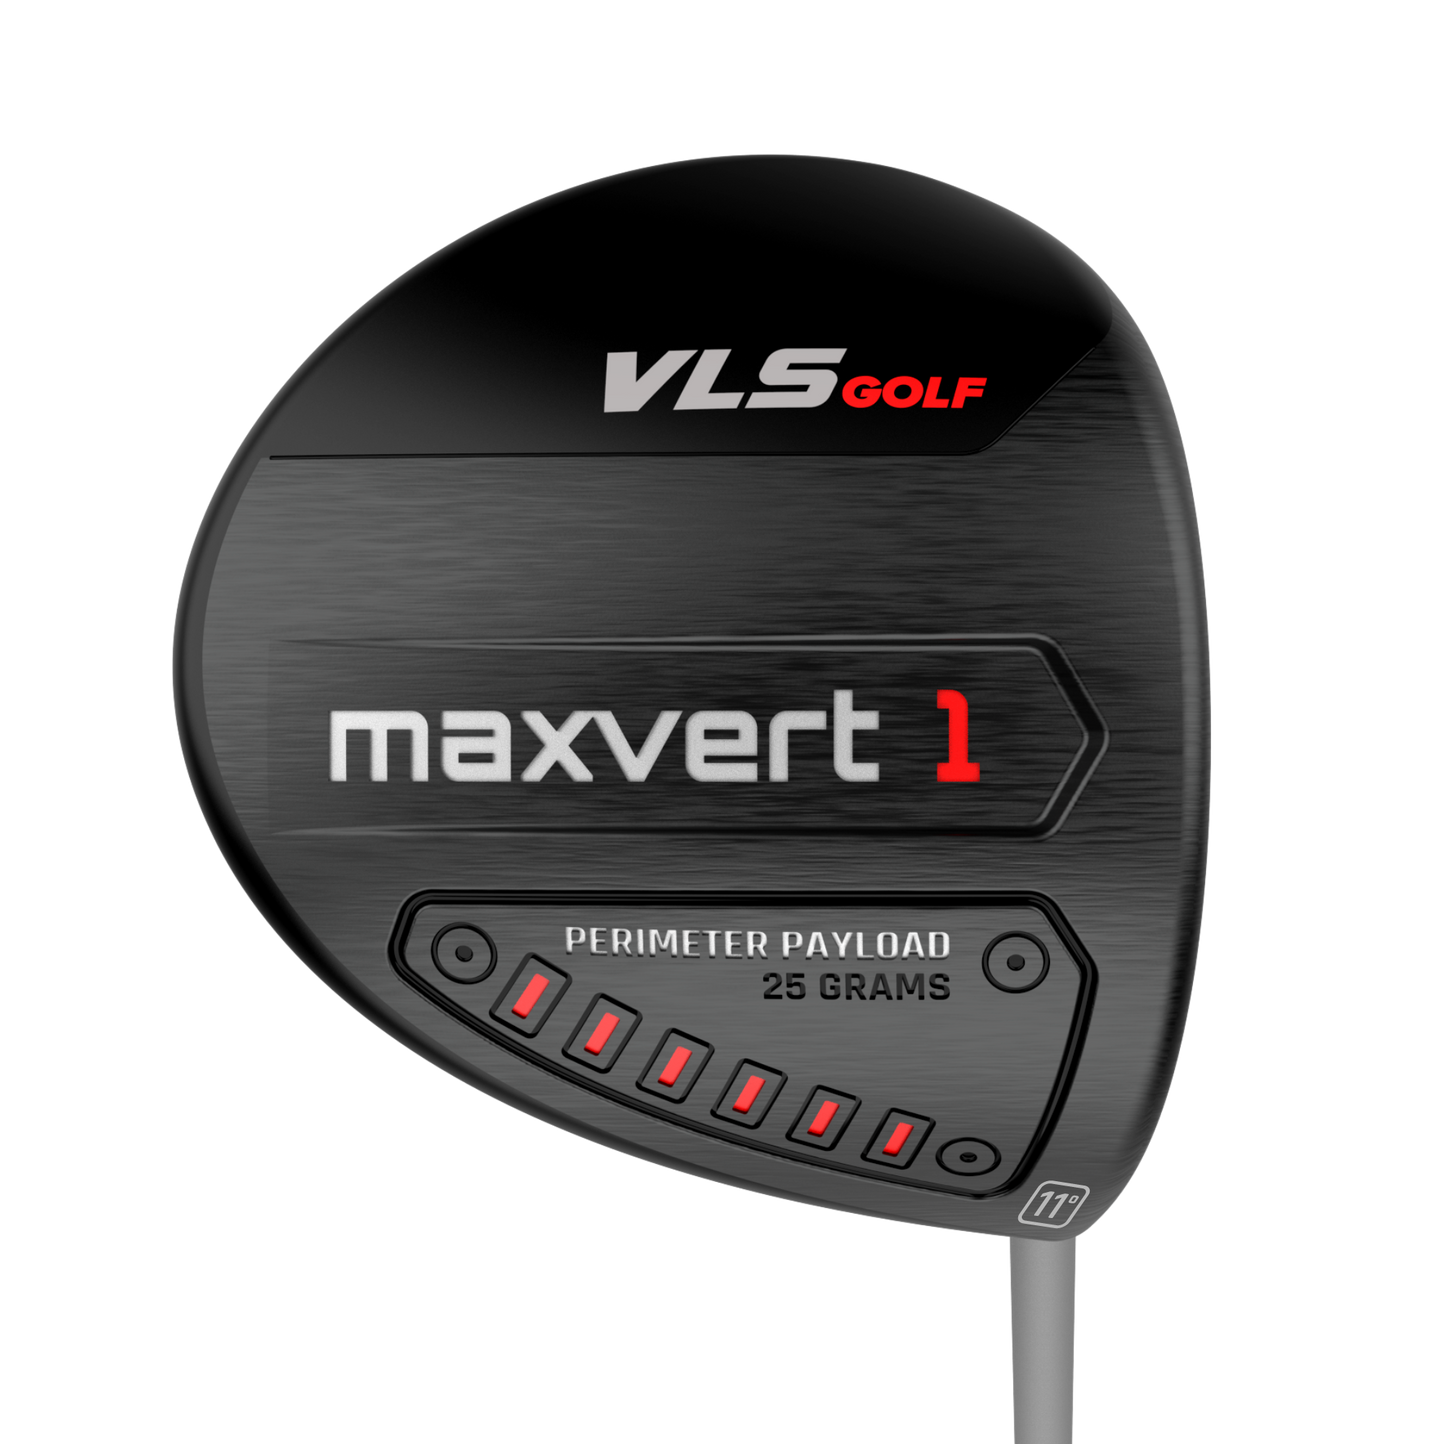 VLS Maxvert 1 Driver Deal.